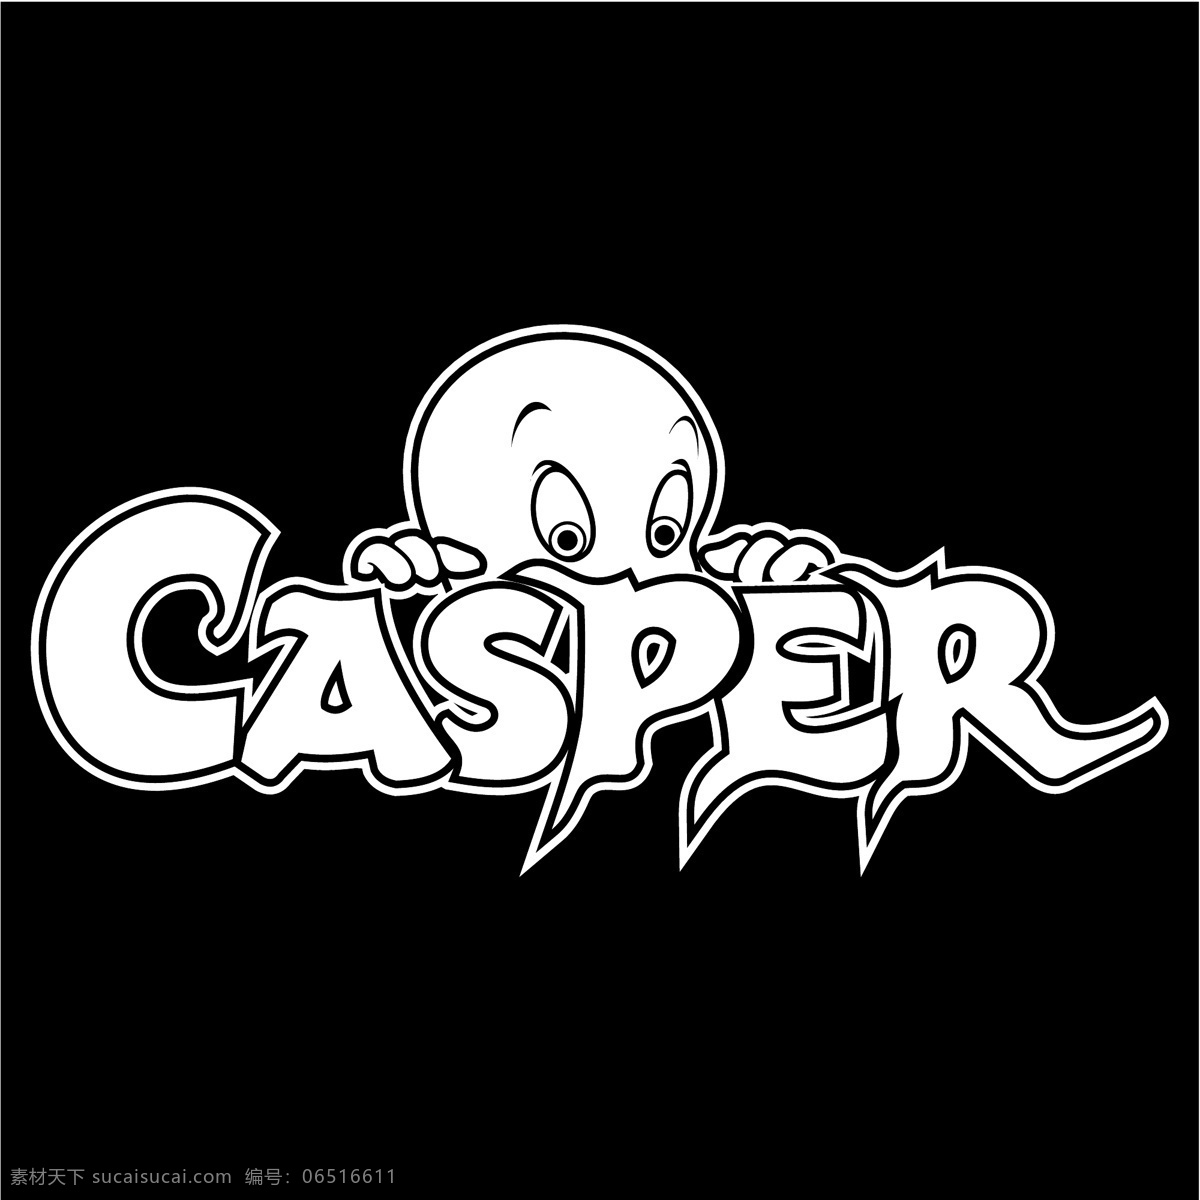 鬼马小精灵0 卡斯帕 矢量卡斯帕 卡斯帕向量 向量 卡 斯帕 矢量 标志 卡斯帕标识 卡斯帕eps casper 卡斯帕卡斯帕 卡斯帕标志 矢量图 建筑家居